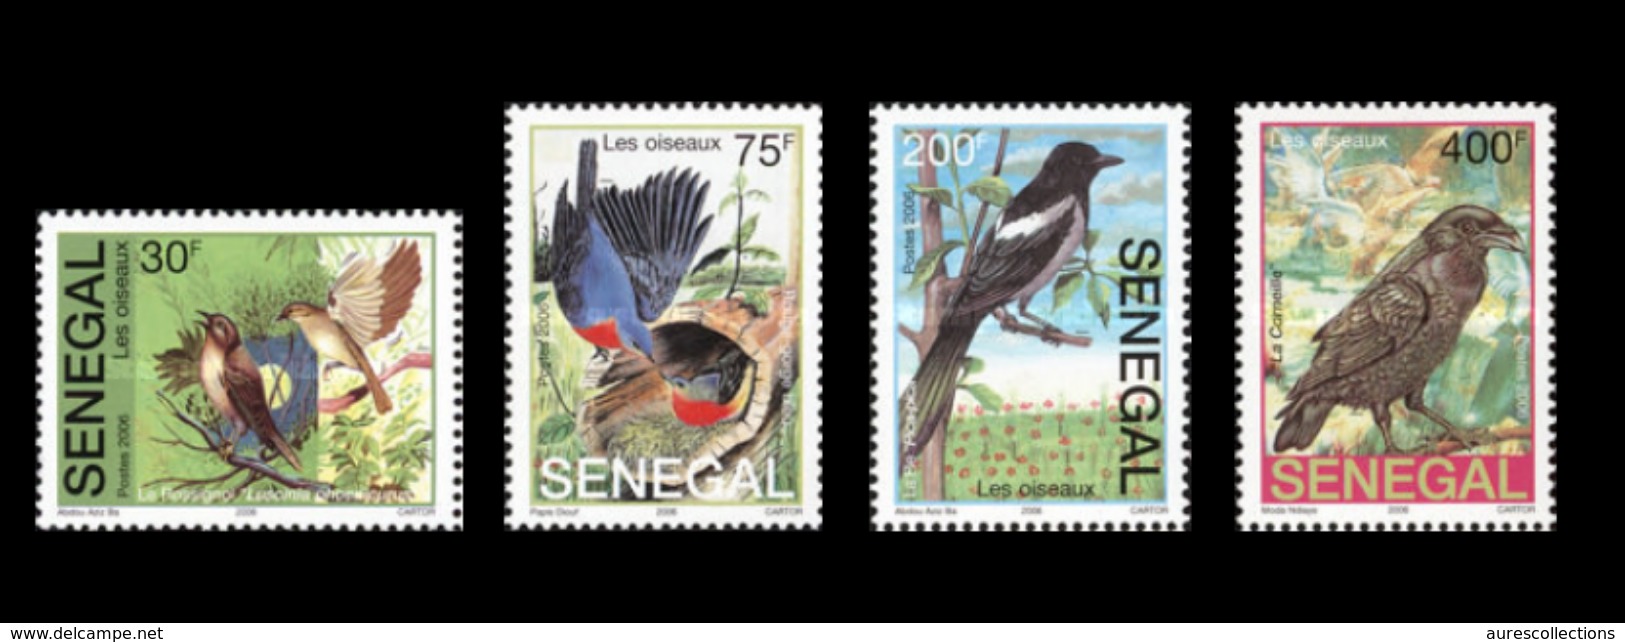 SENEGAL 2004 2006 OISEAUX OISEAU BIRDS BIRD - RARE -  MNH ** - Senegal (1960-...)